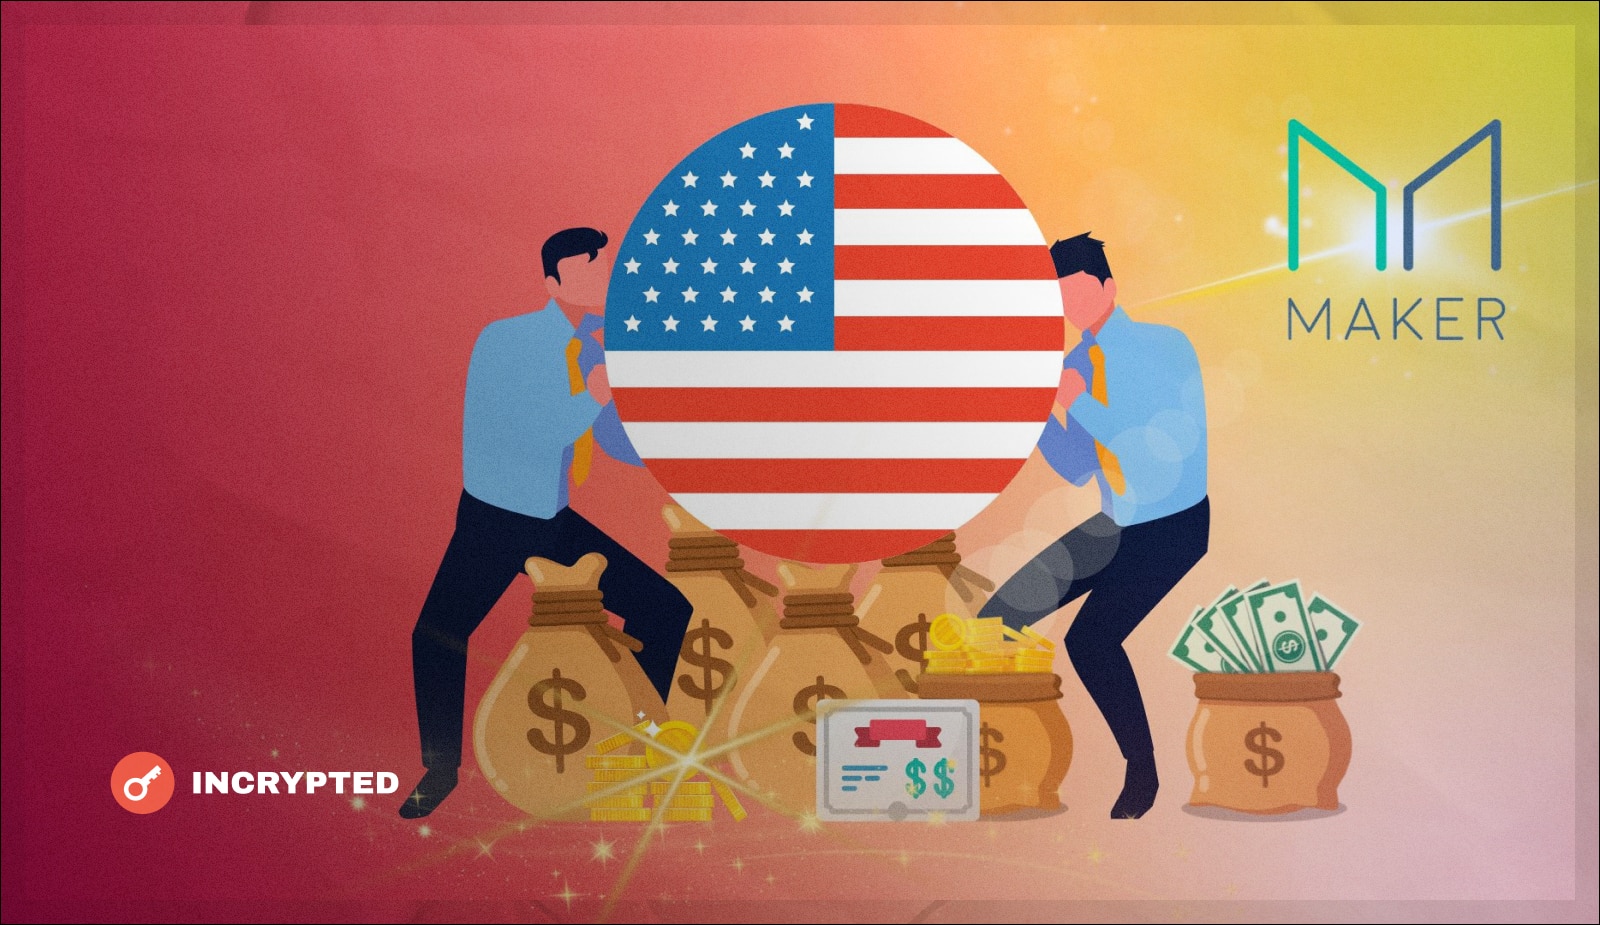 Сообщество MakerDAO решает вопрос с инвестированием в американские гособлигации